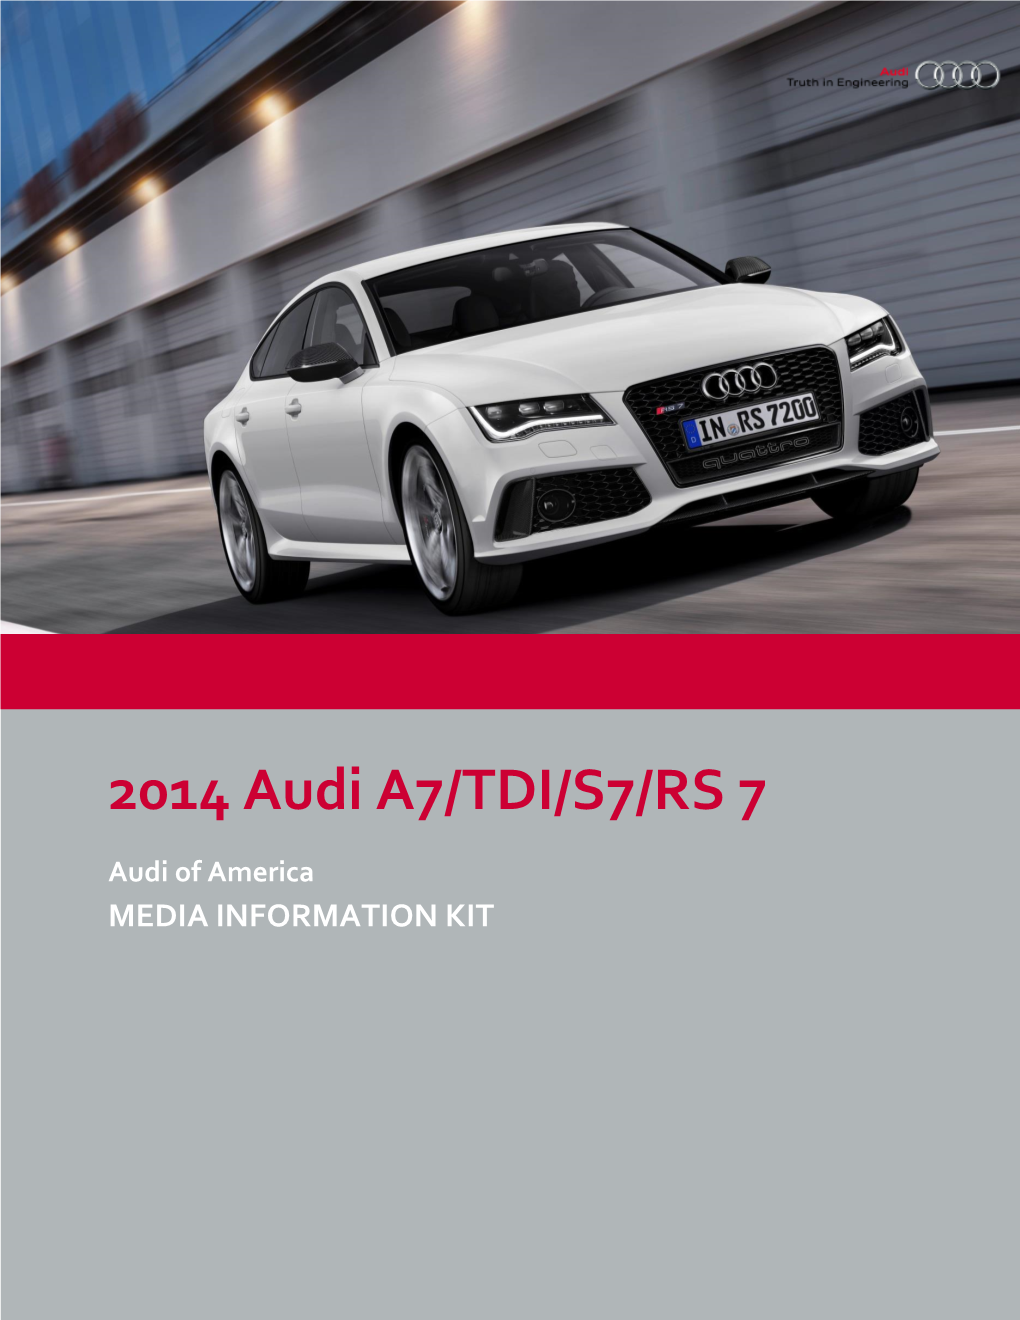 2014 Audi A7/TDI/S7/RS 7